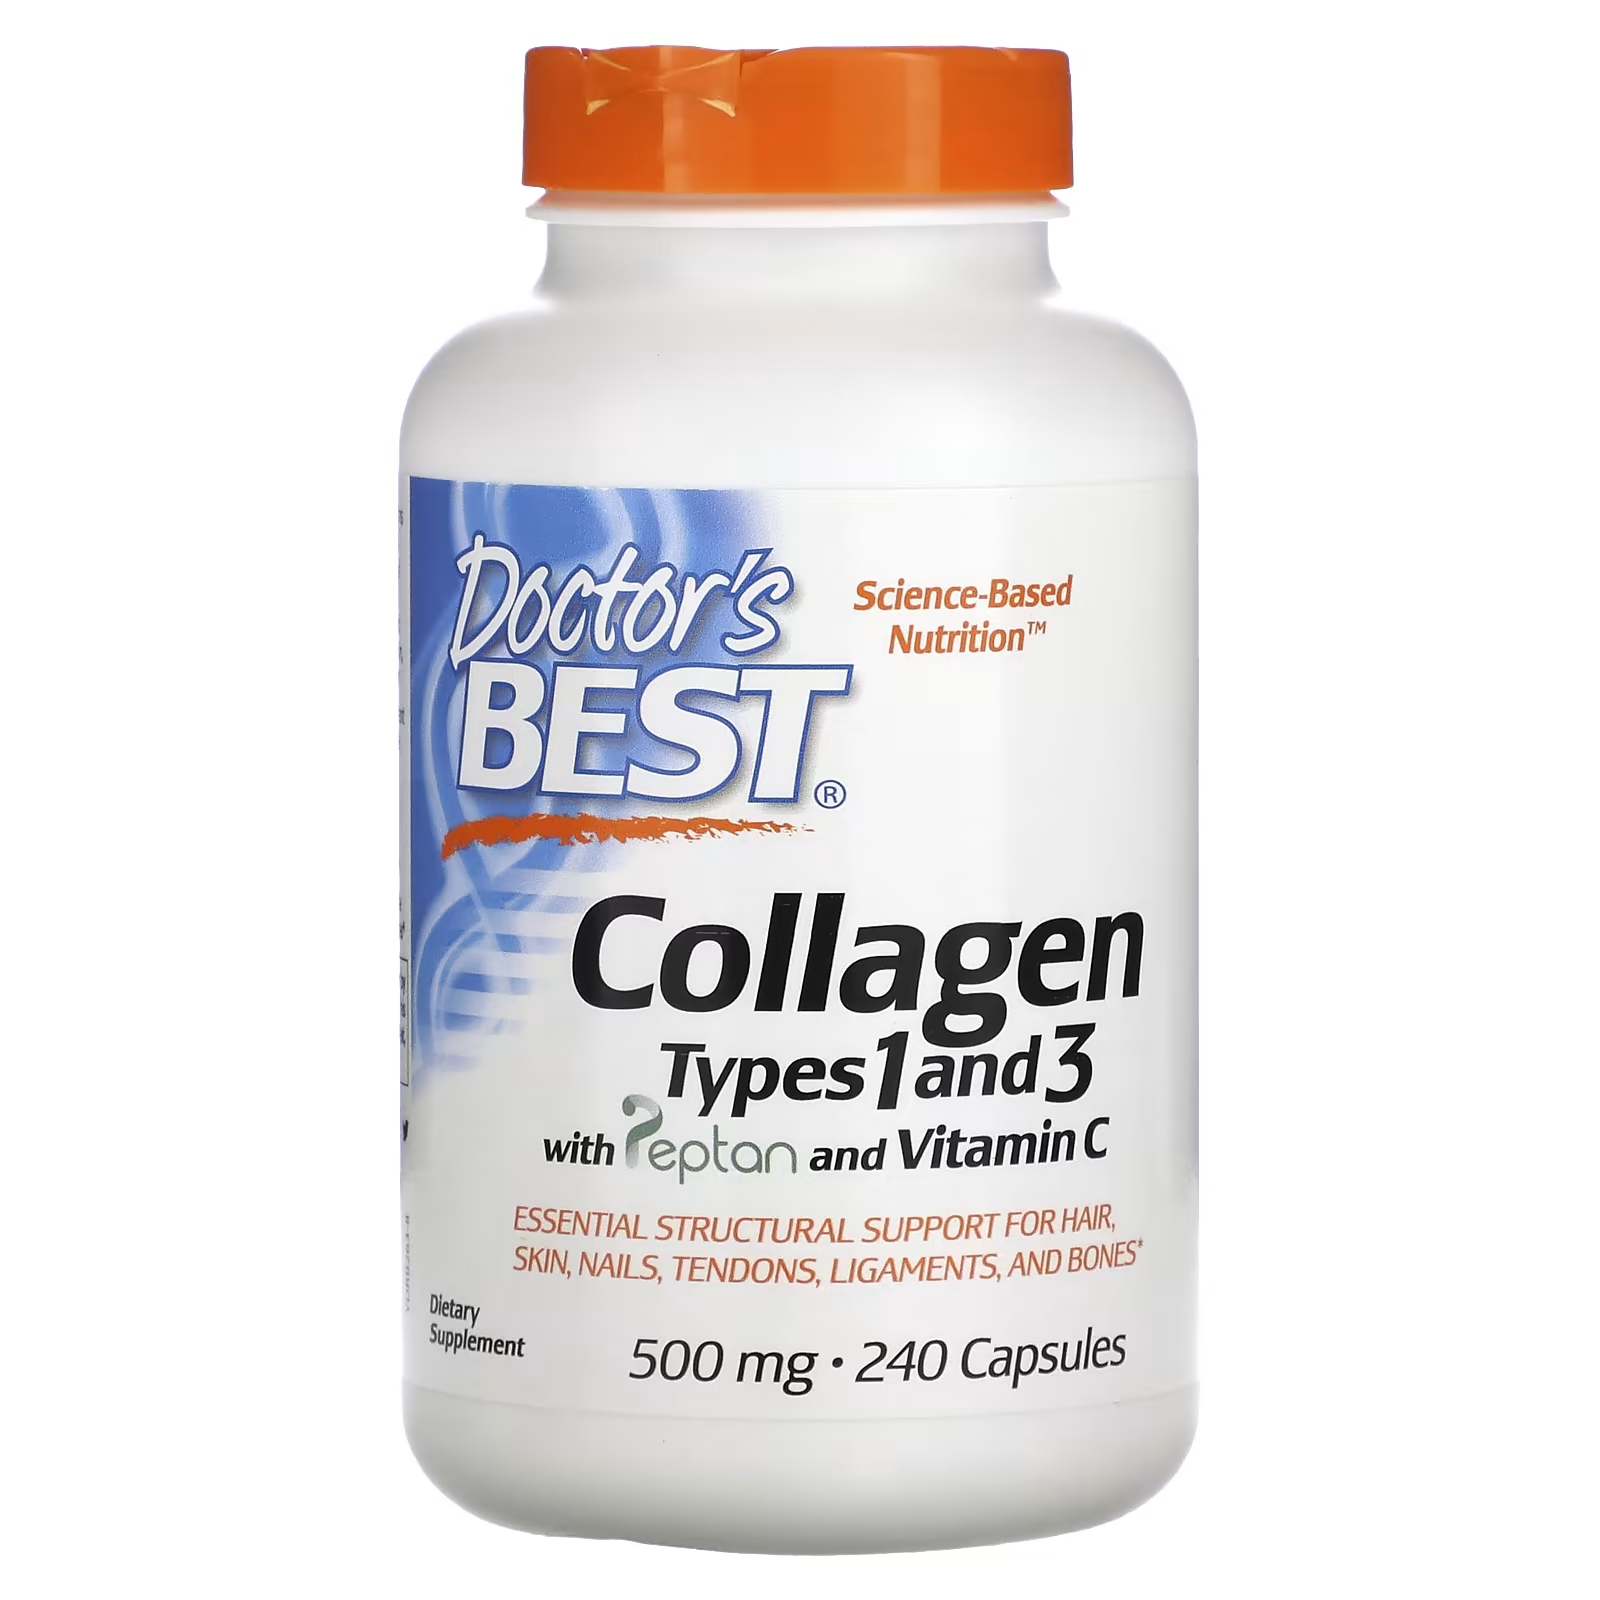 Doctor's Best Коллаген 1 и 3 типов с пептаном и витамином С, 240 капсул морской гидролизованный коллаген california gold nutrition 464 гр